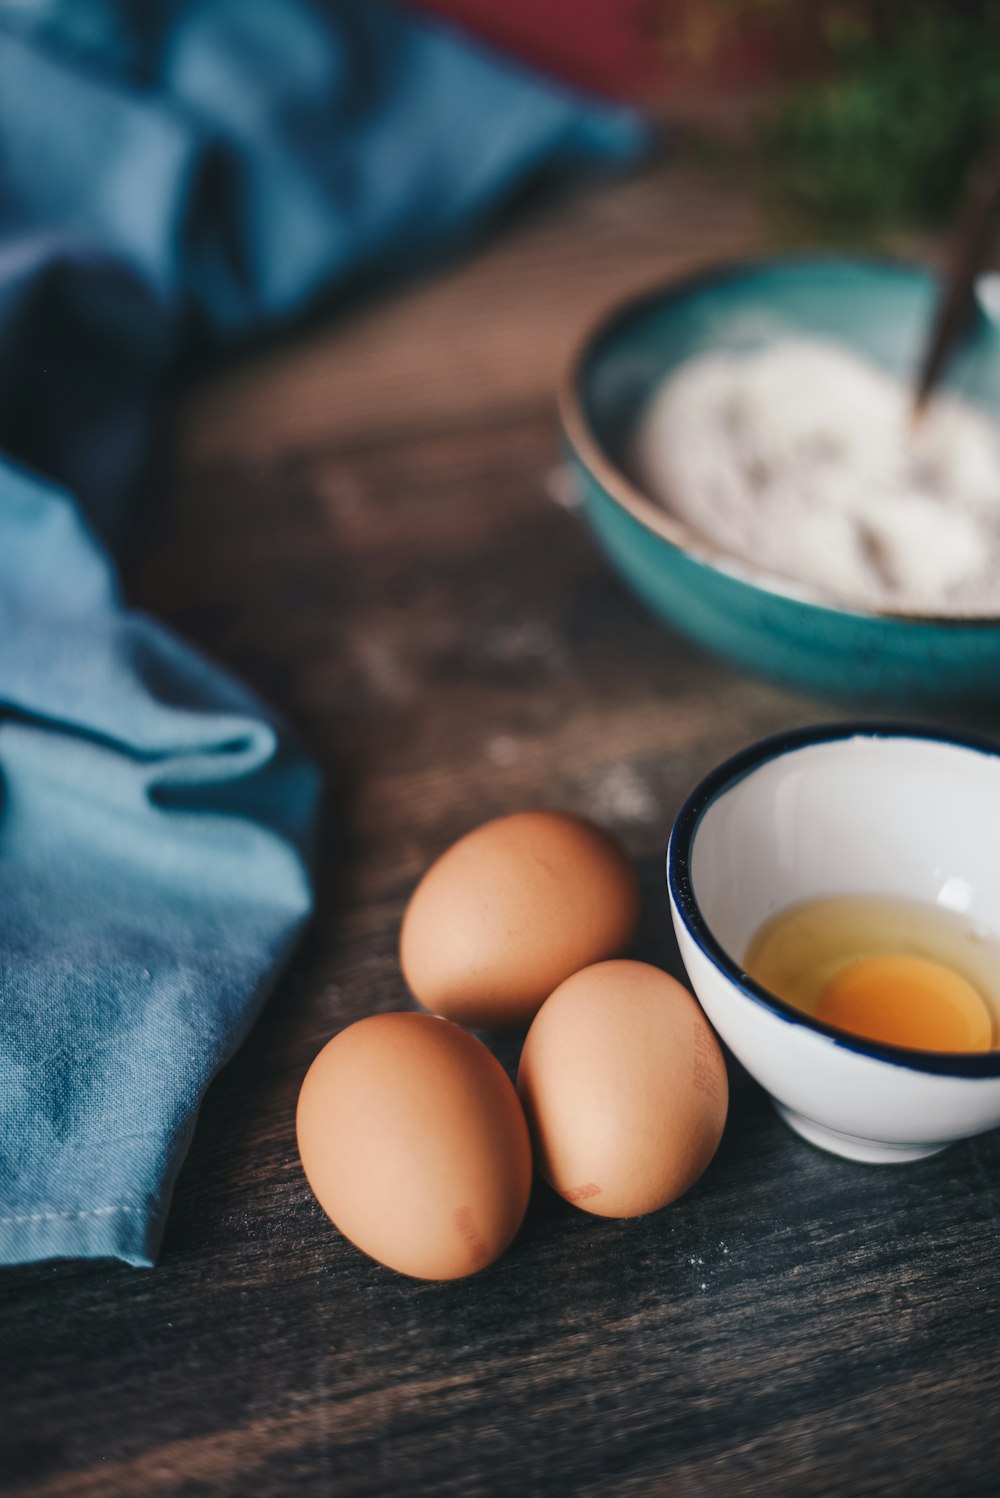 흰색 세라믹 그릇 근처에 있는 갈색 달걀 3개의 선택적 초점 사진